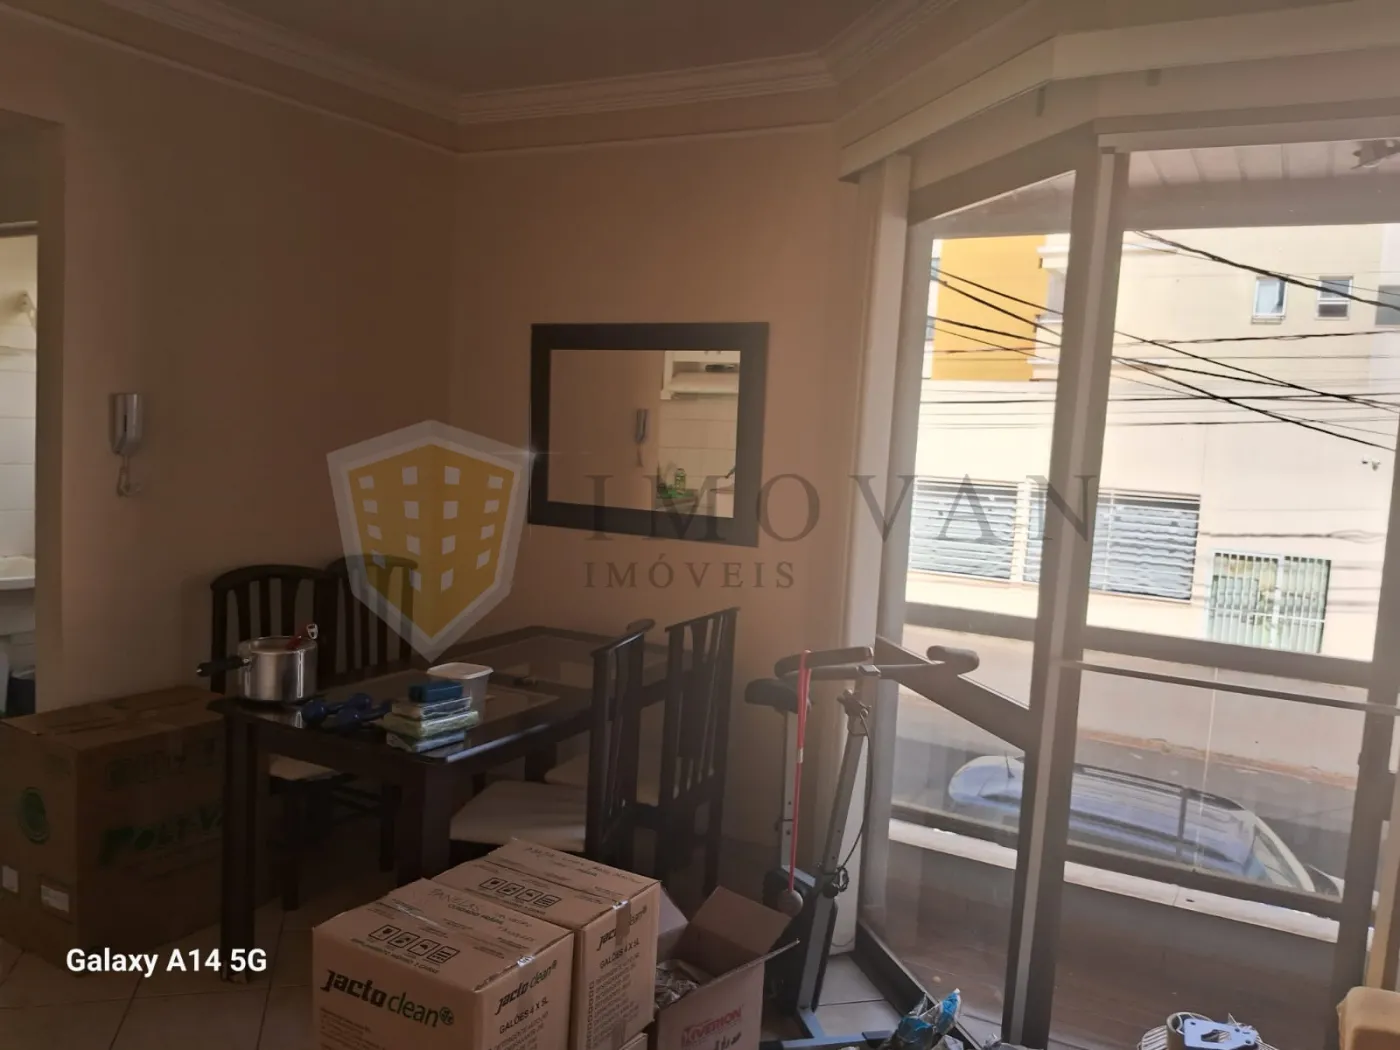 Comprar Apartamento / Padrão em Ribeirão Preto R$ 195.000,00 - Foto 4